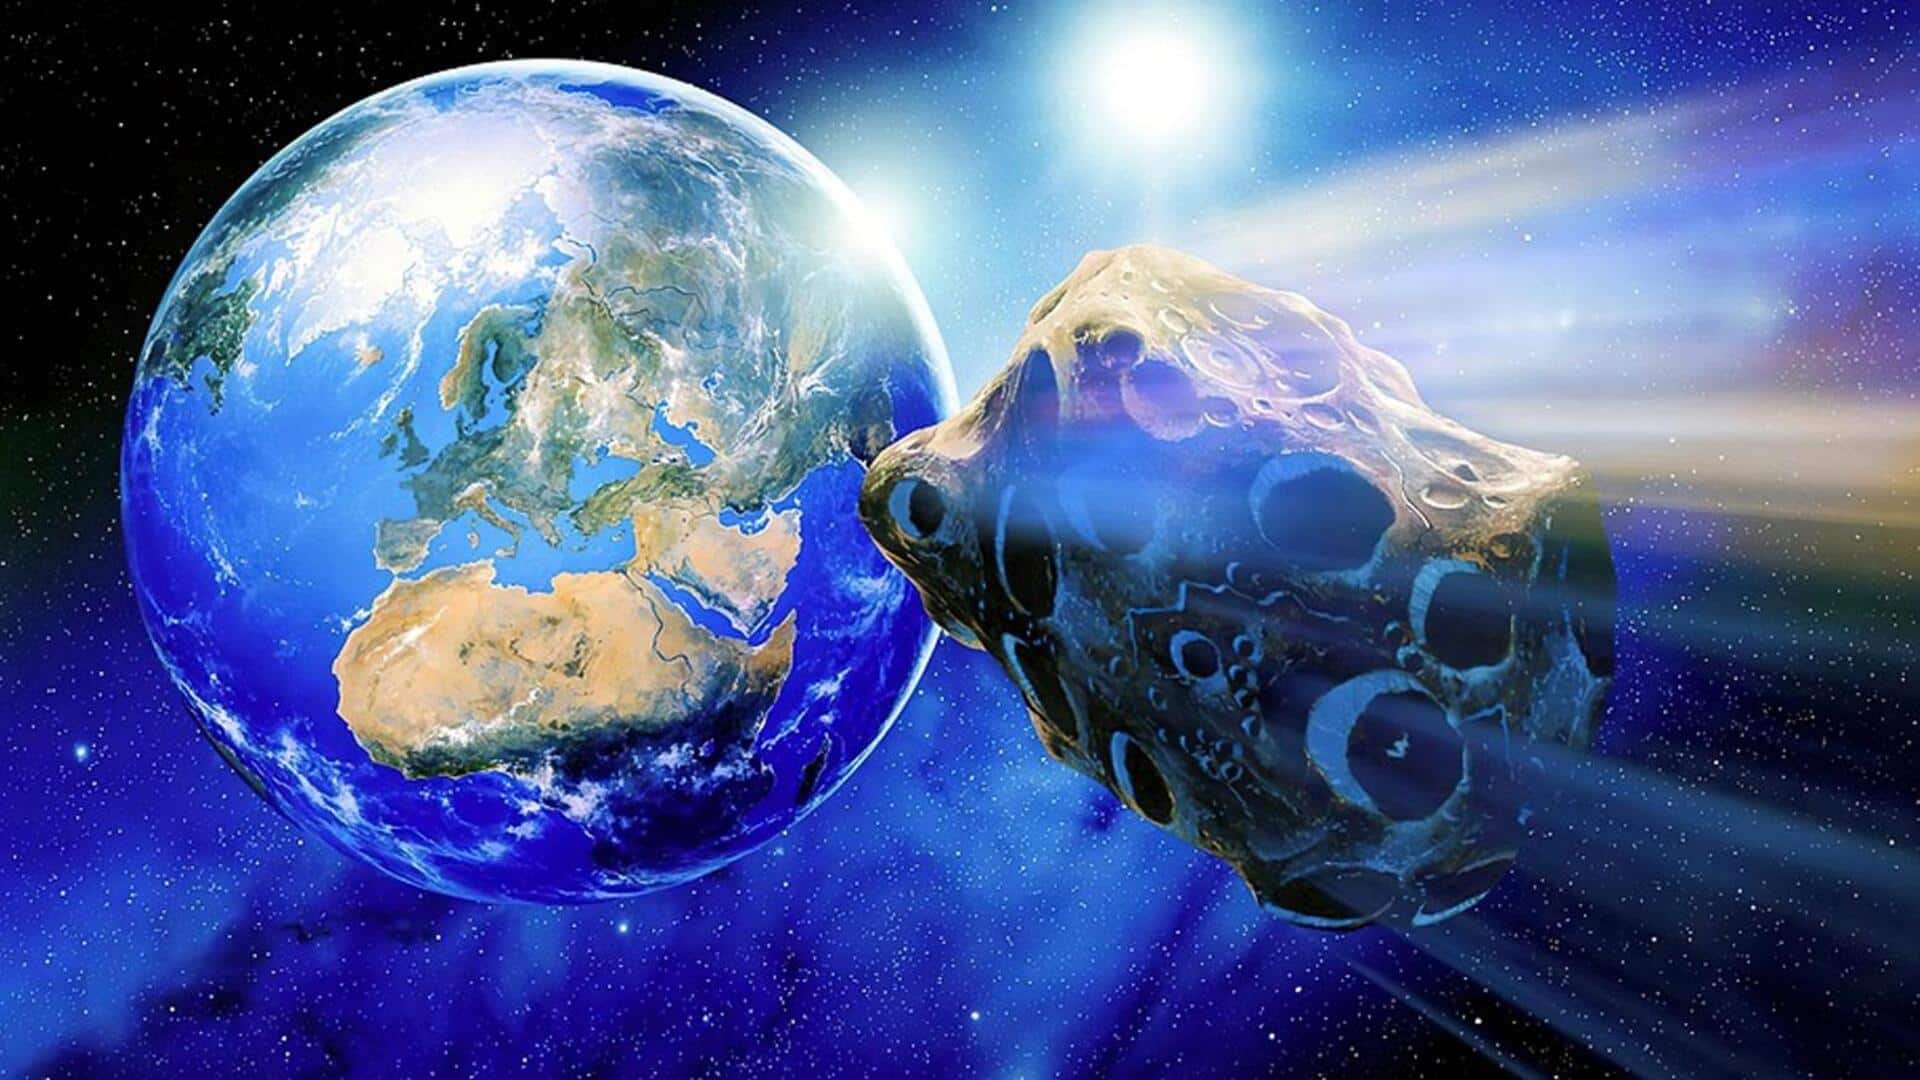 नासा ने जारी किया अलर्ट, पृथ्वी की तरफ तेजी से आ रहा यह एस्ट्रोयड